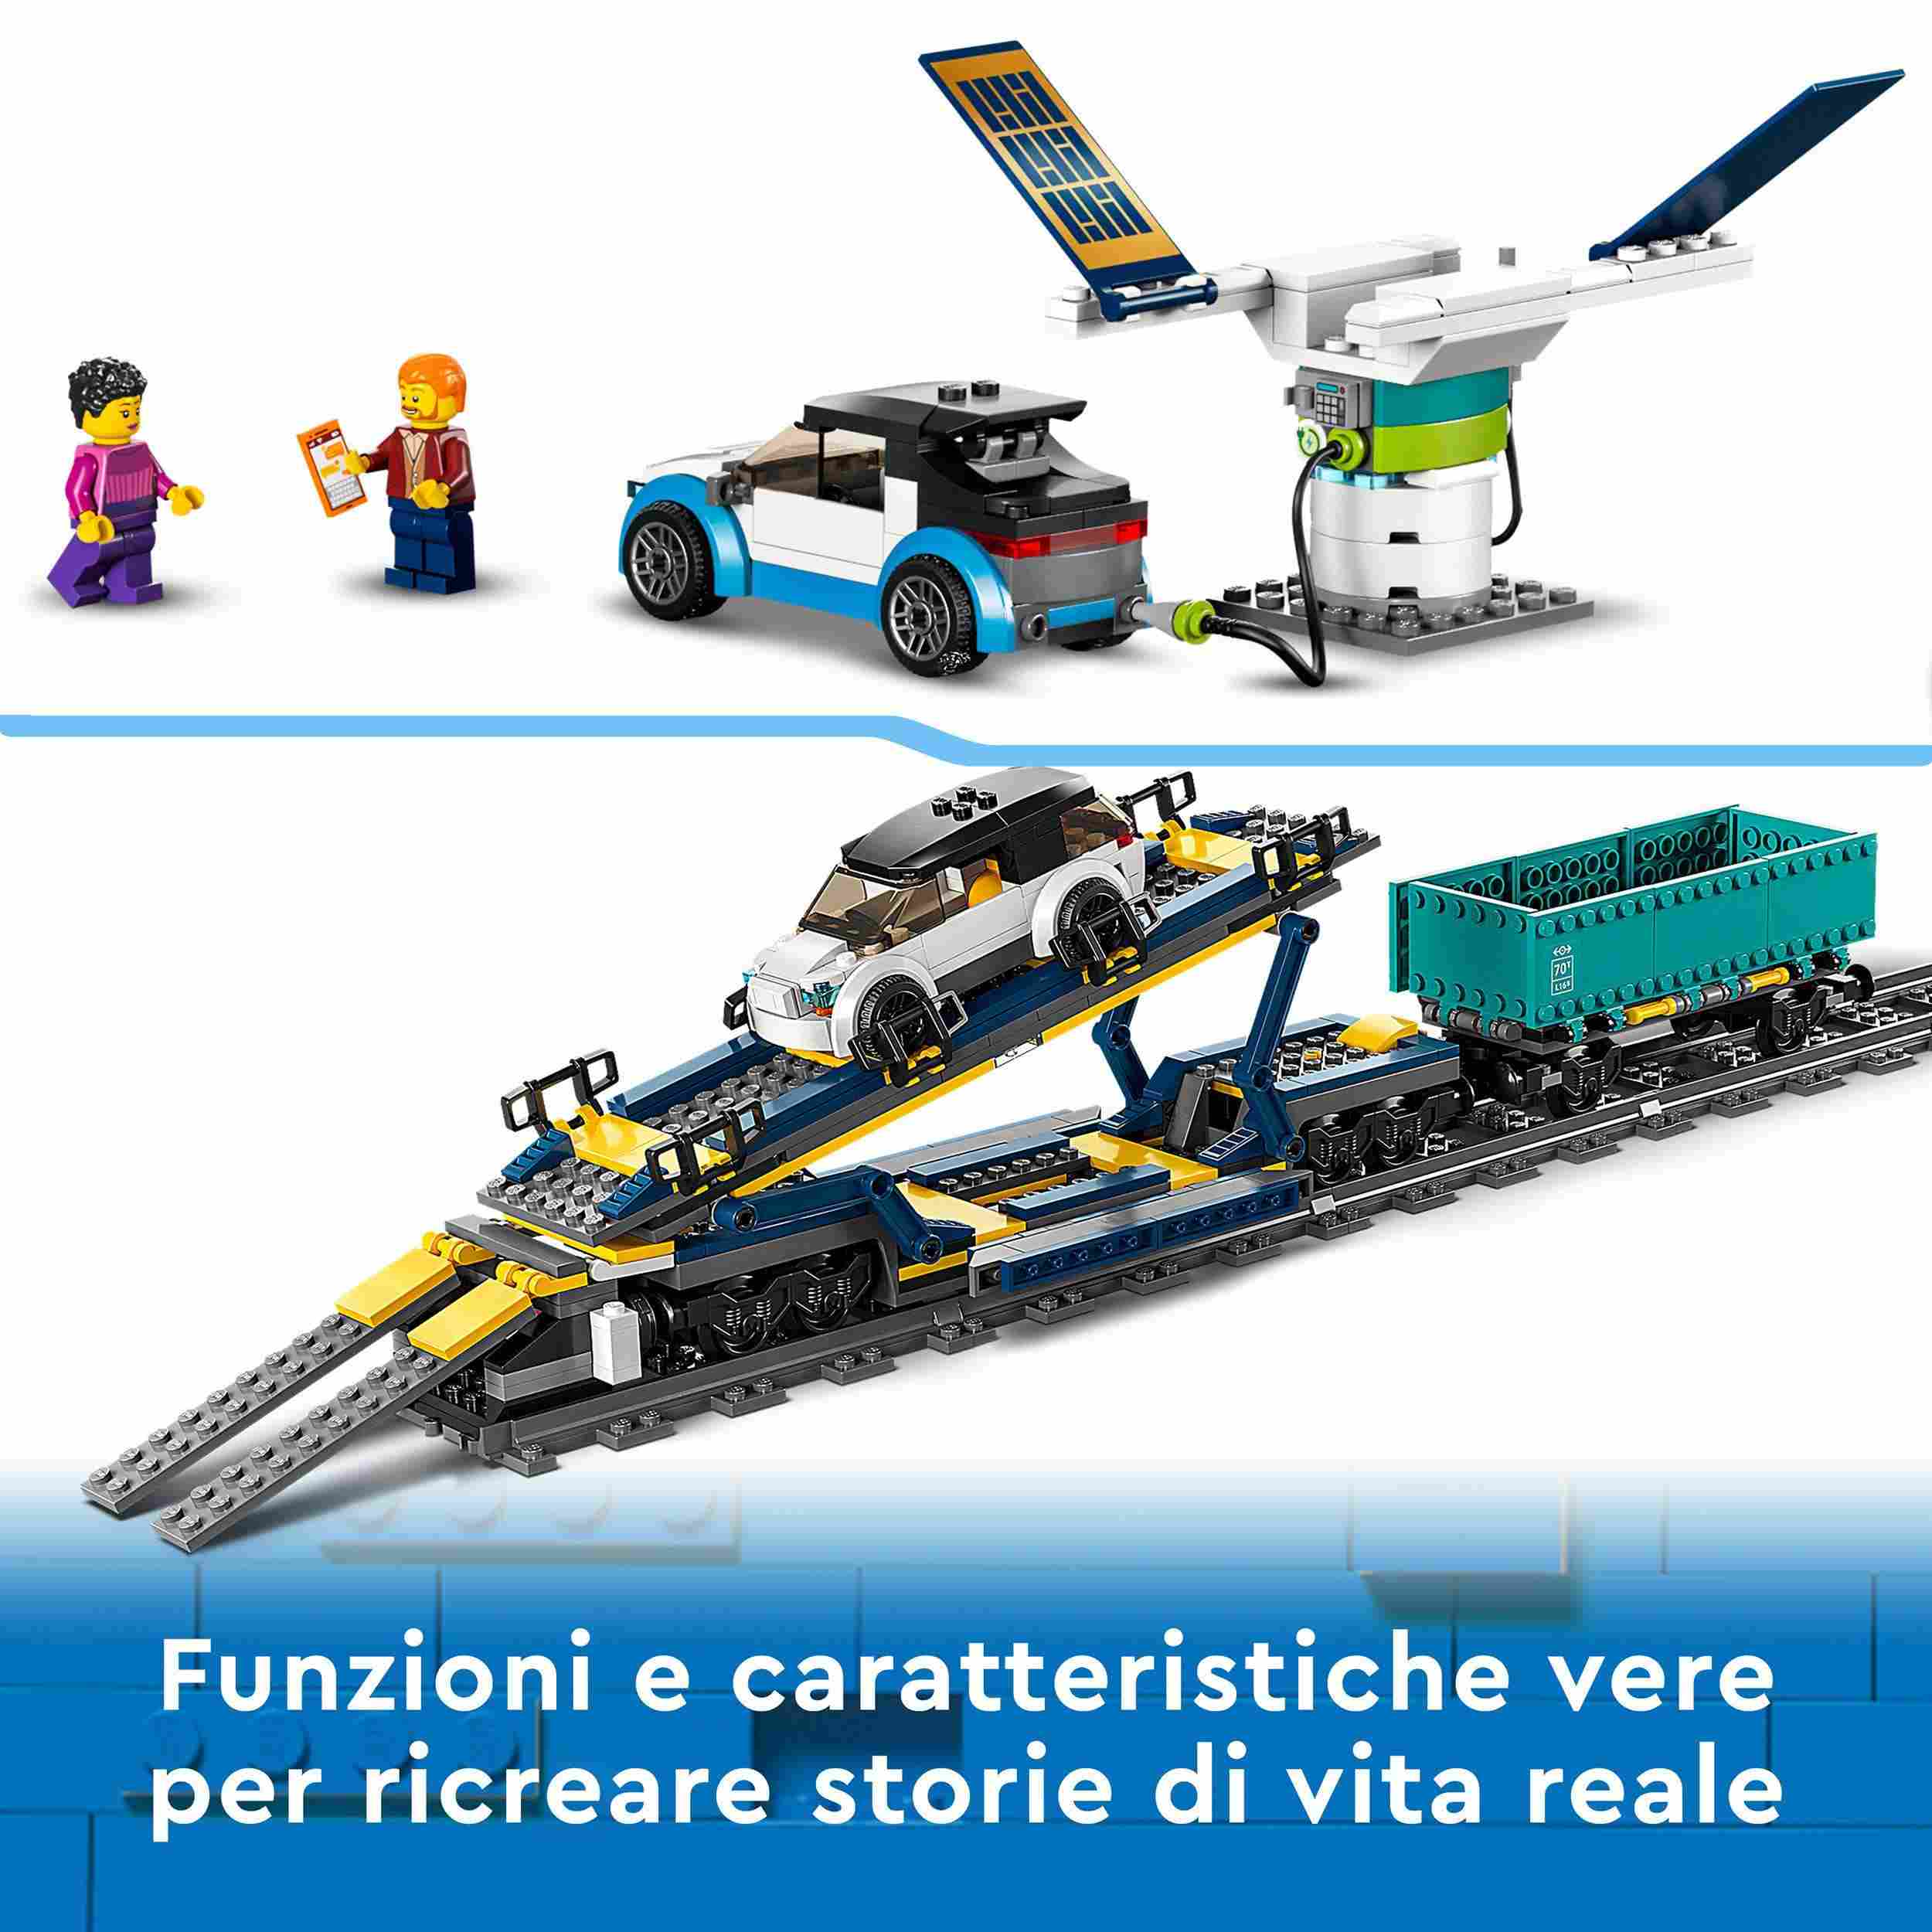 Lego city 60336 treno merci, locomotiva telecomandata con suoni e binari, gru giocattolo, giochi per bambini dai 7 anni - LEGO CITY, Lego